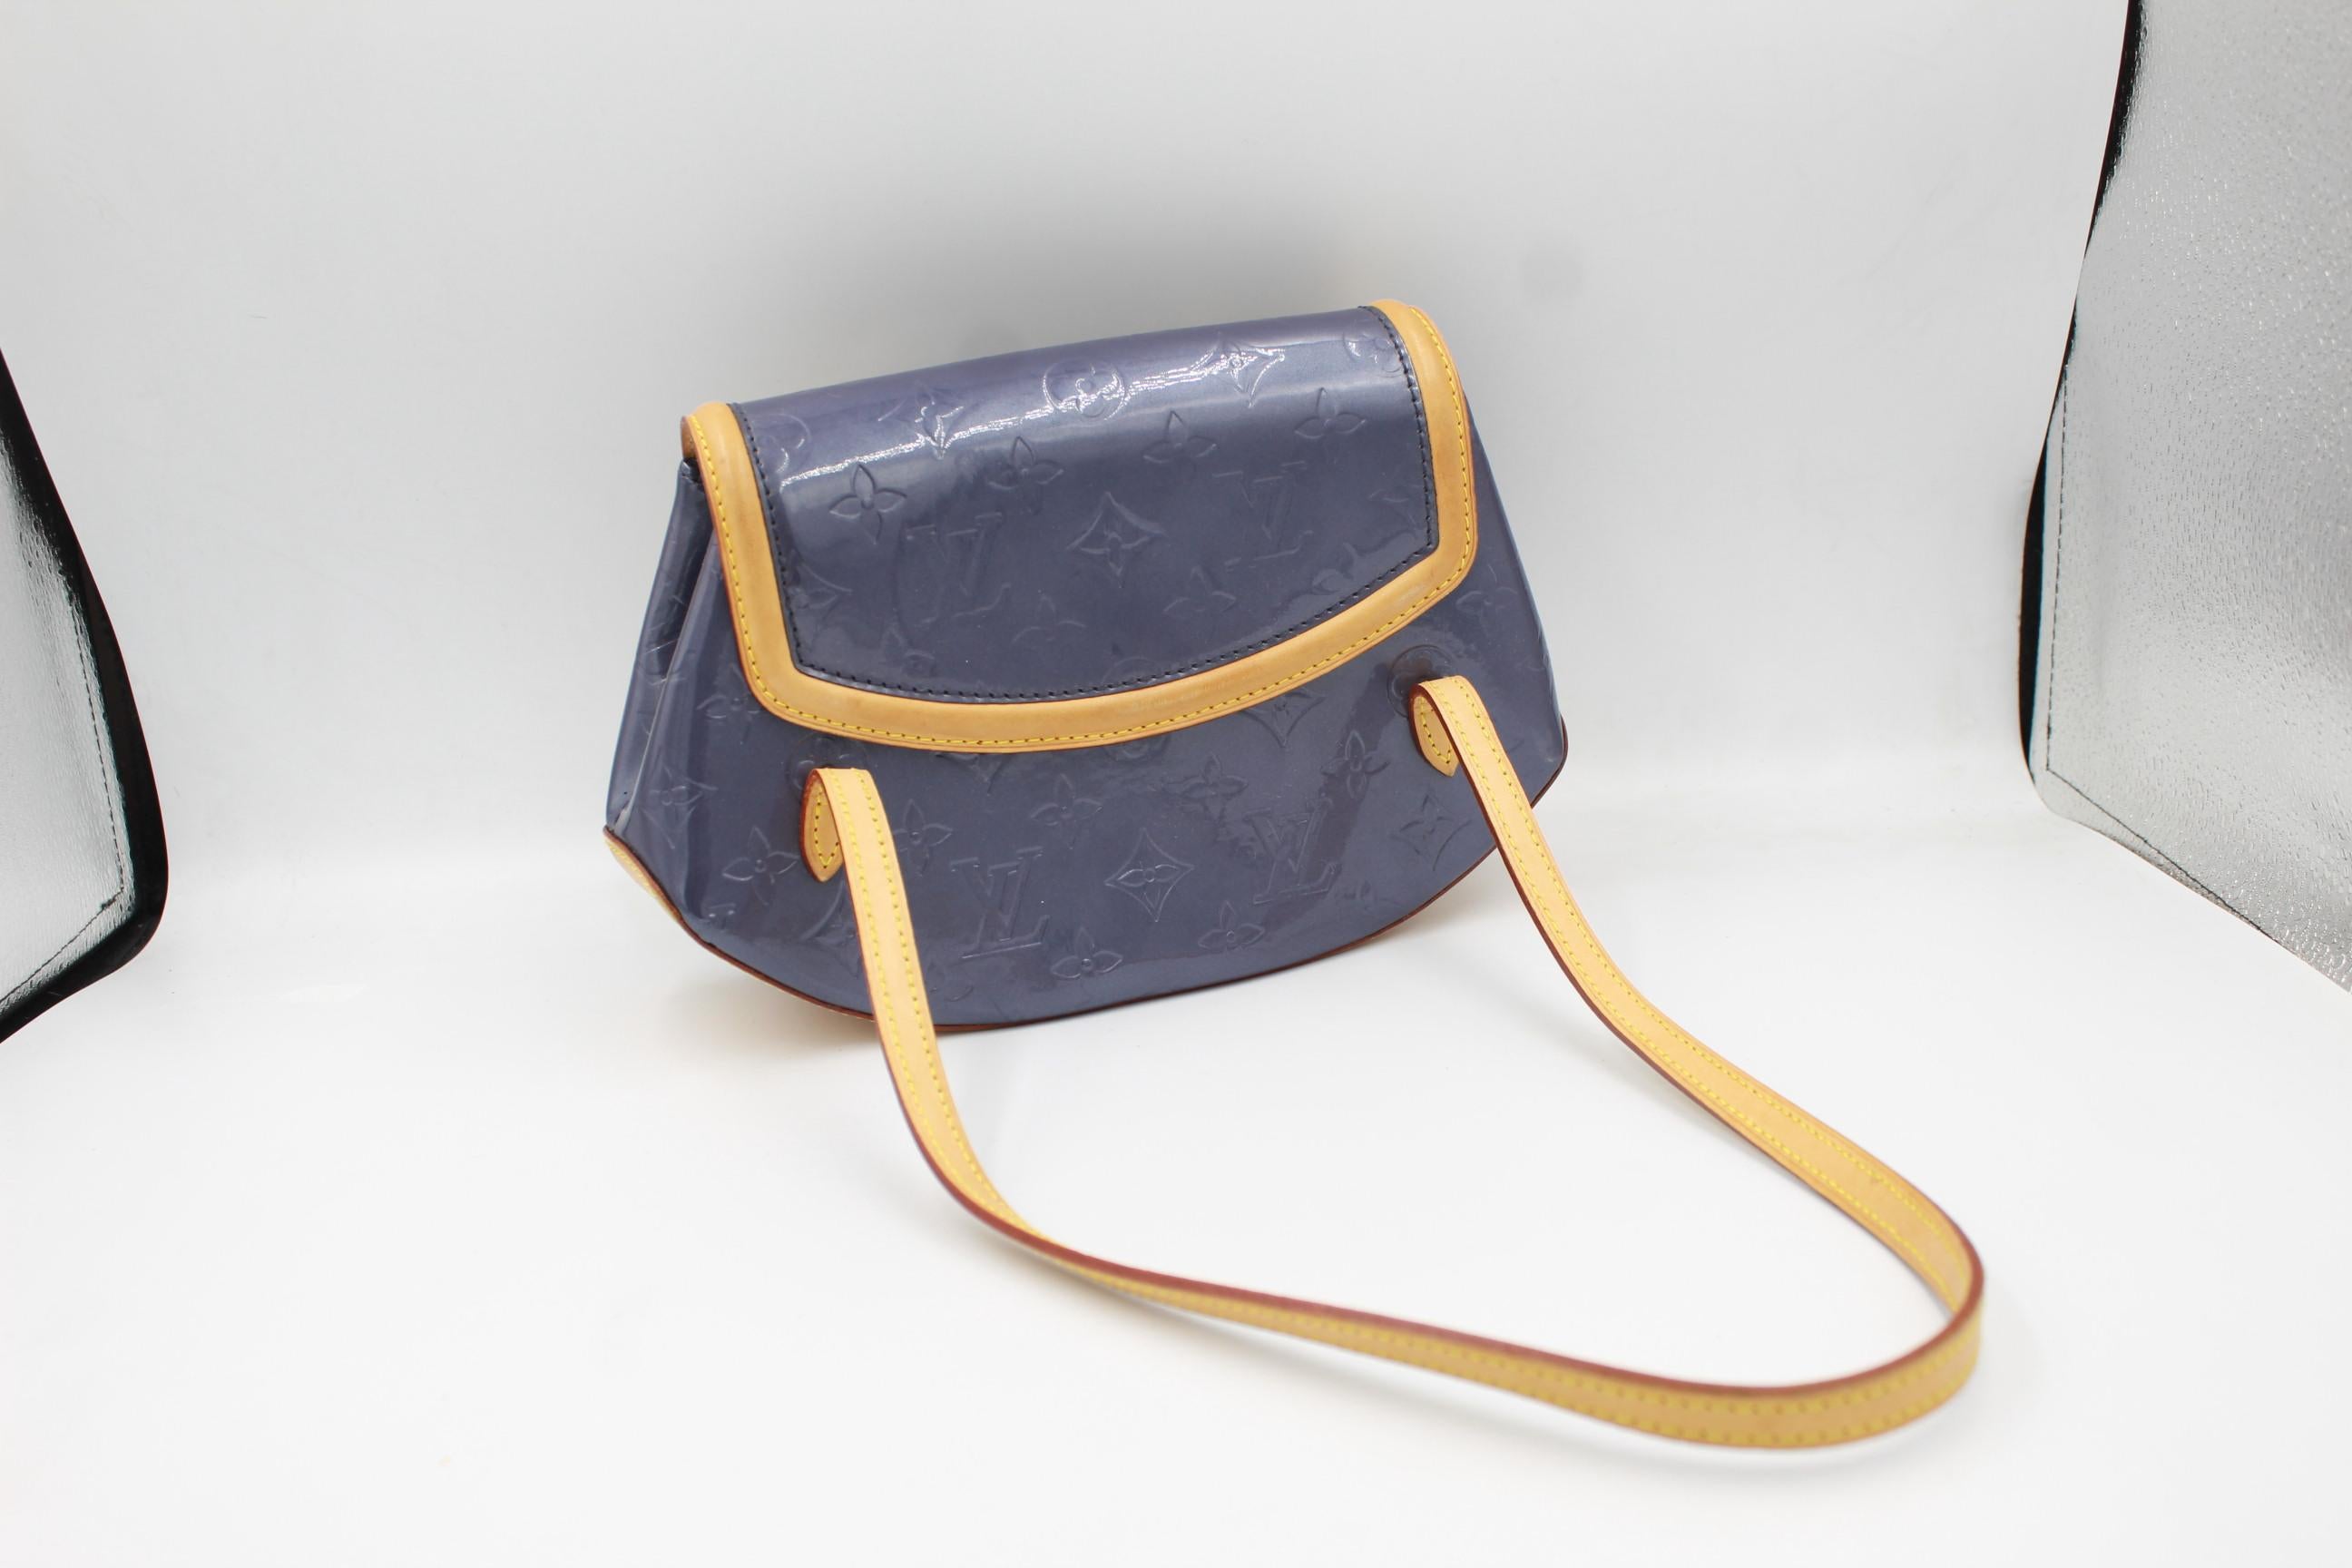 Louis Vuitton biscayne patent purple leather.
Good conditions. 
26cm x 18cm x 6cm